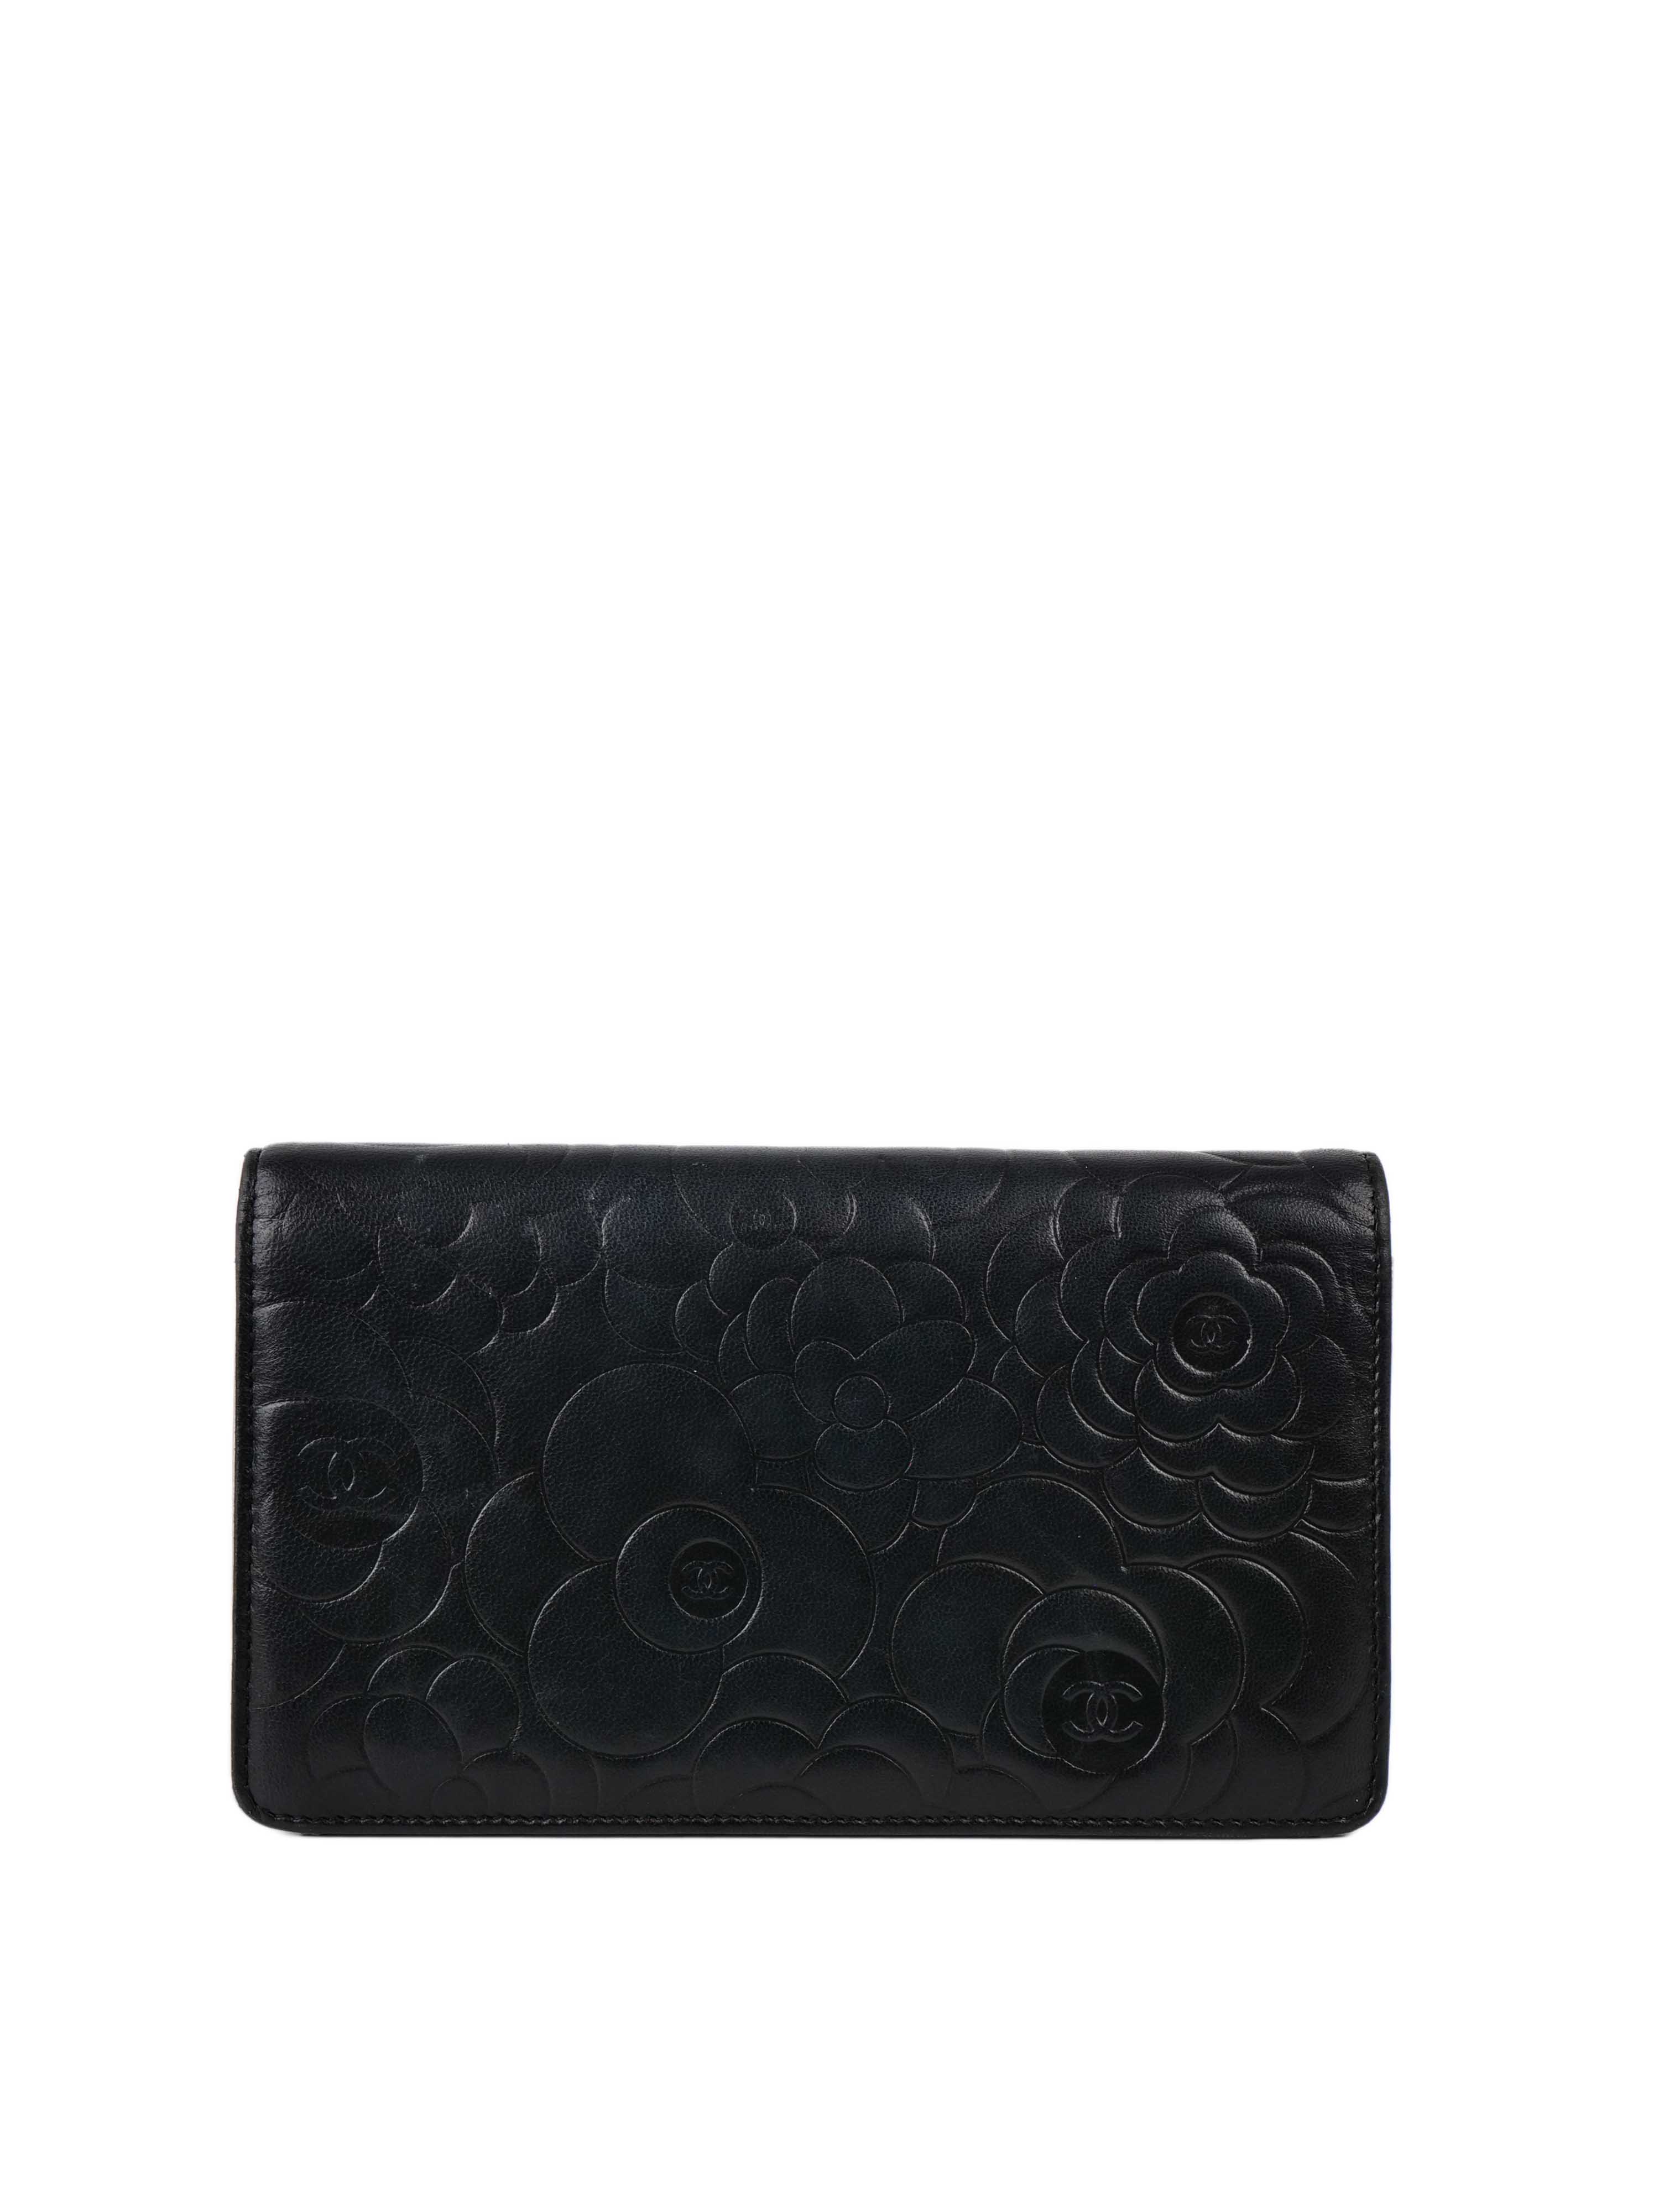 Chanel Black Camellia Wallet.